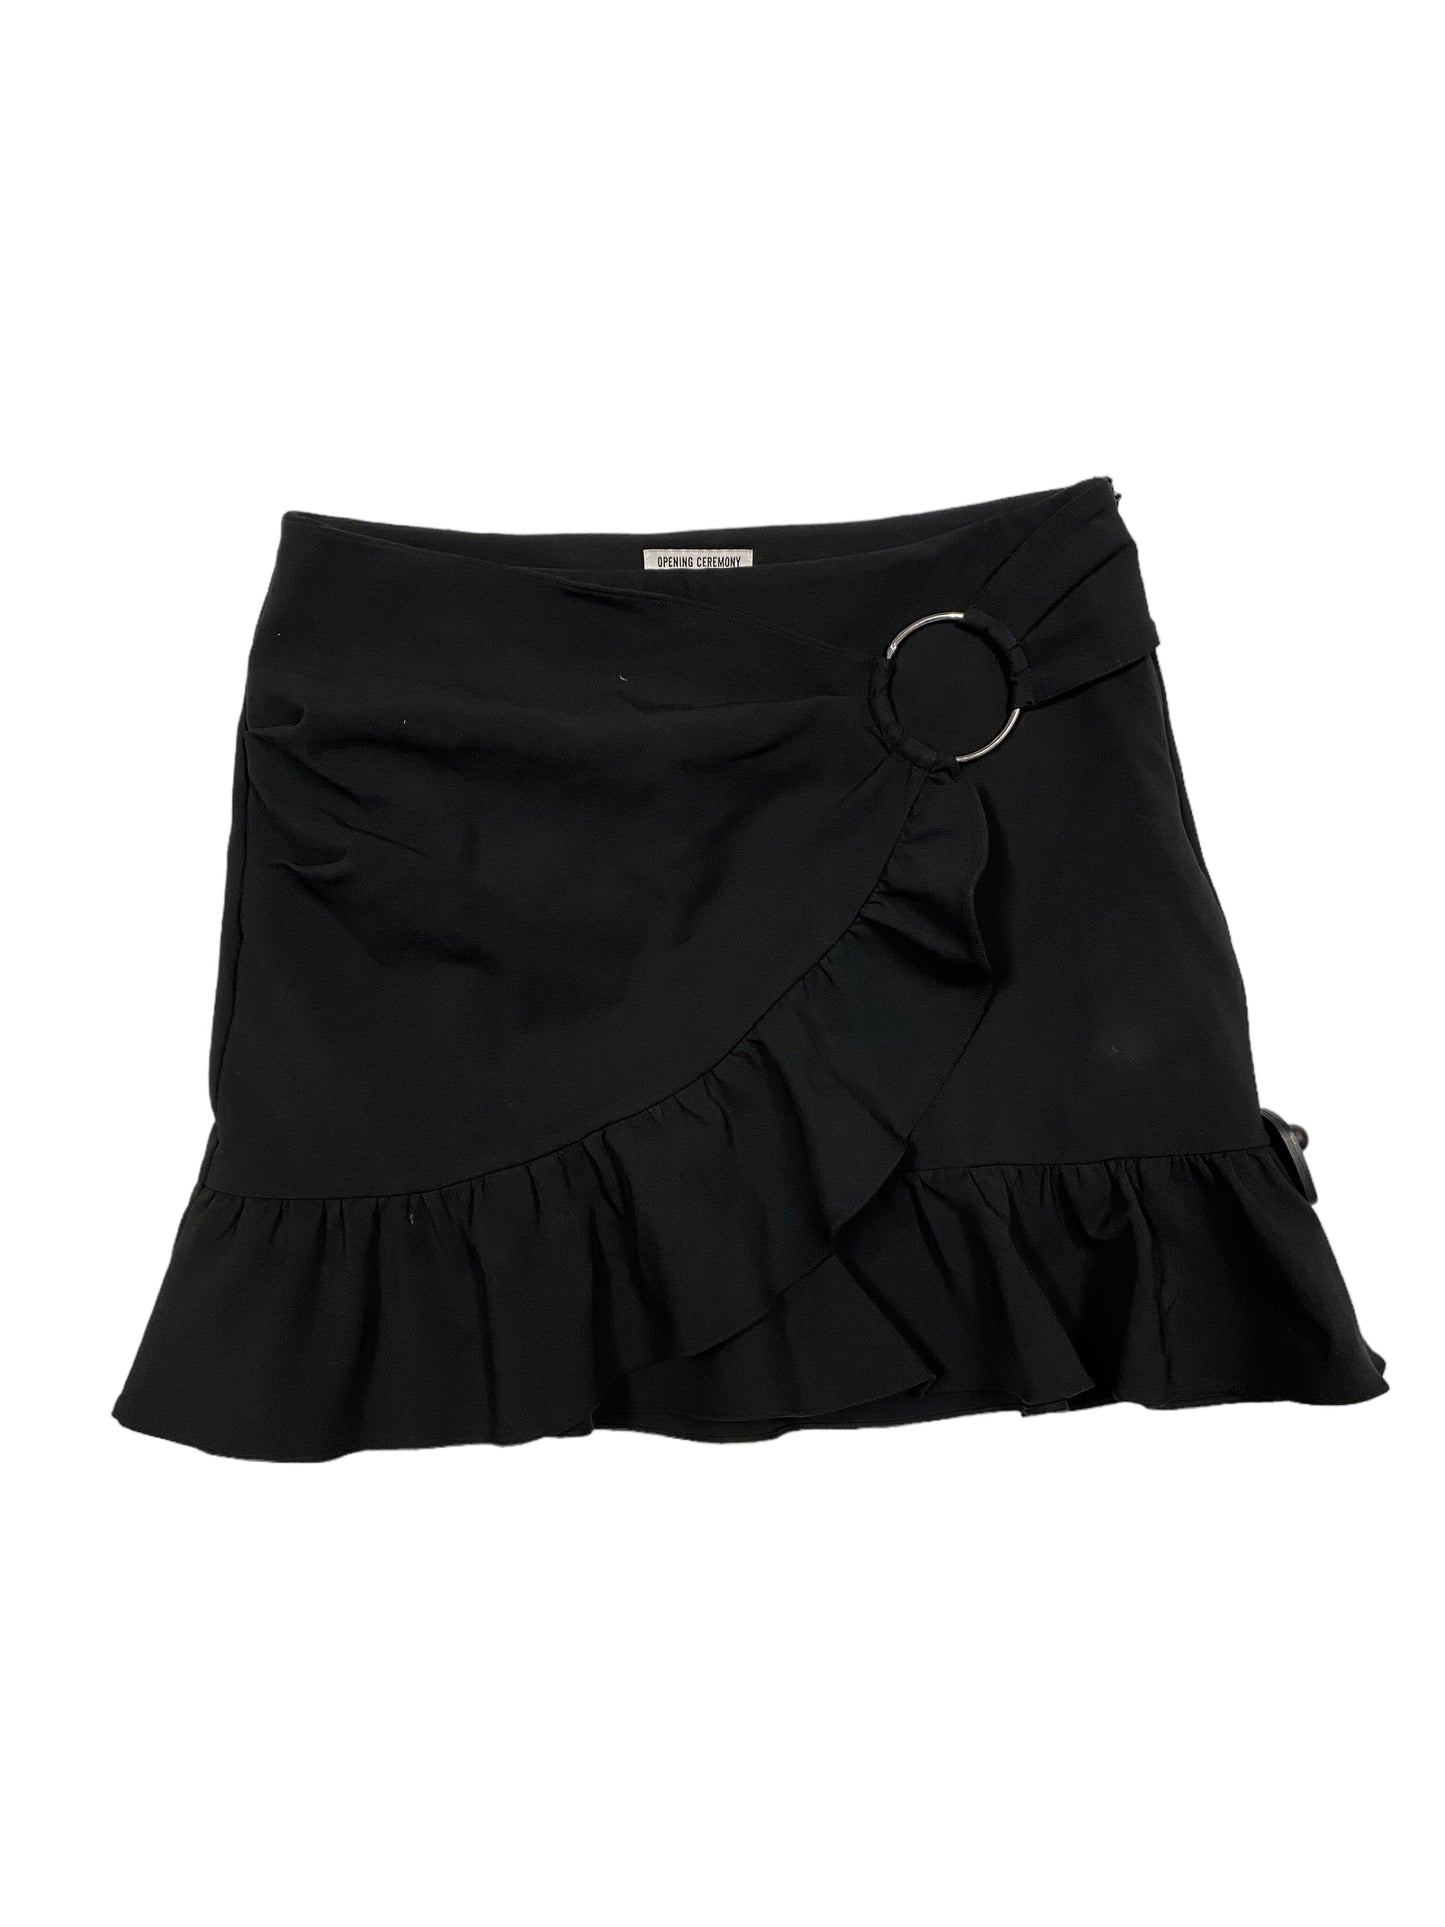 Black Skirt Mini & Short Cma, Size 8